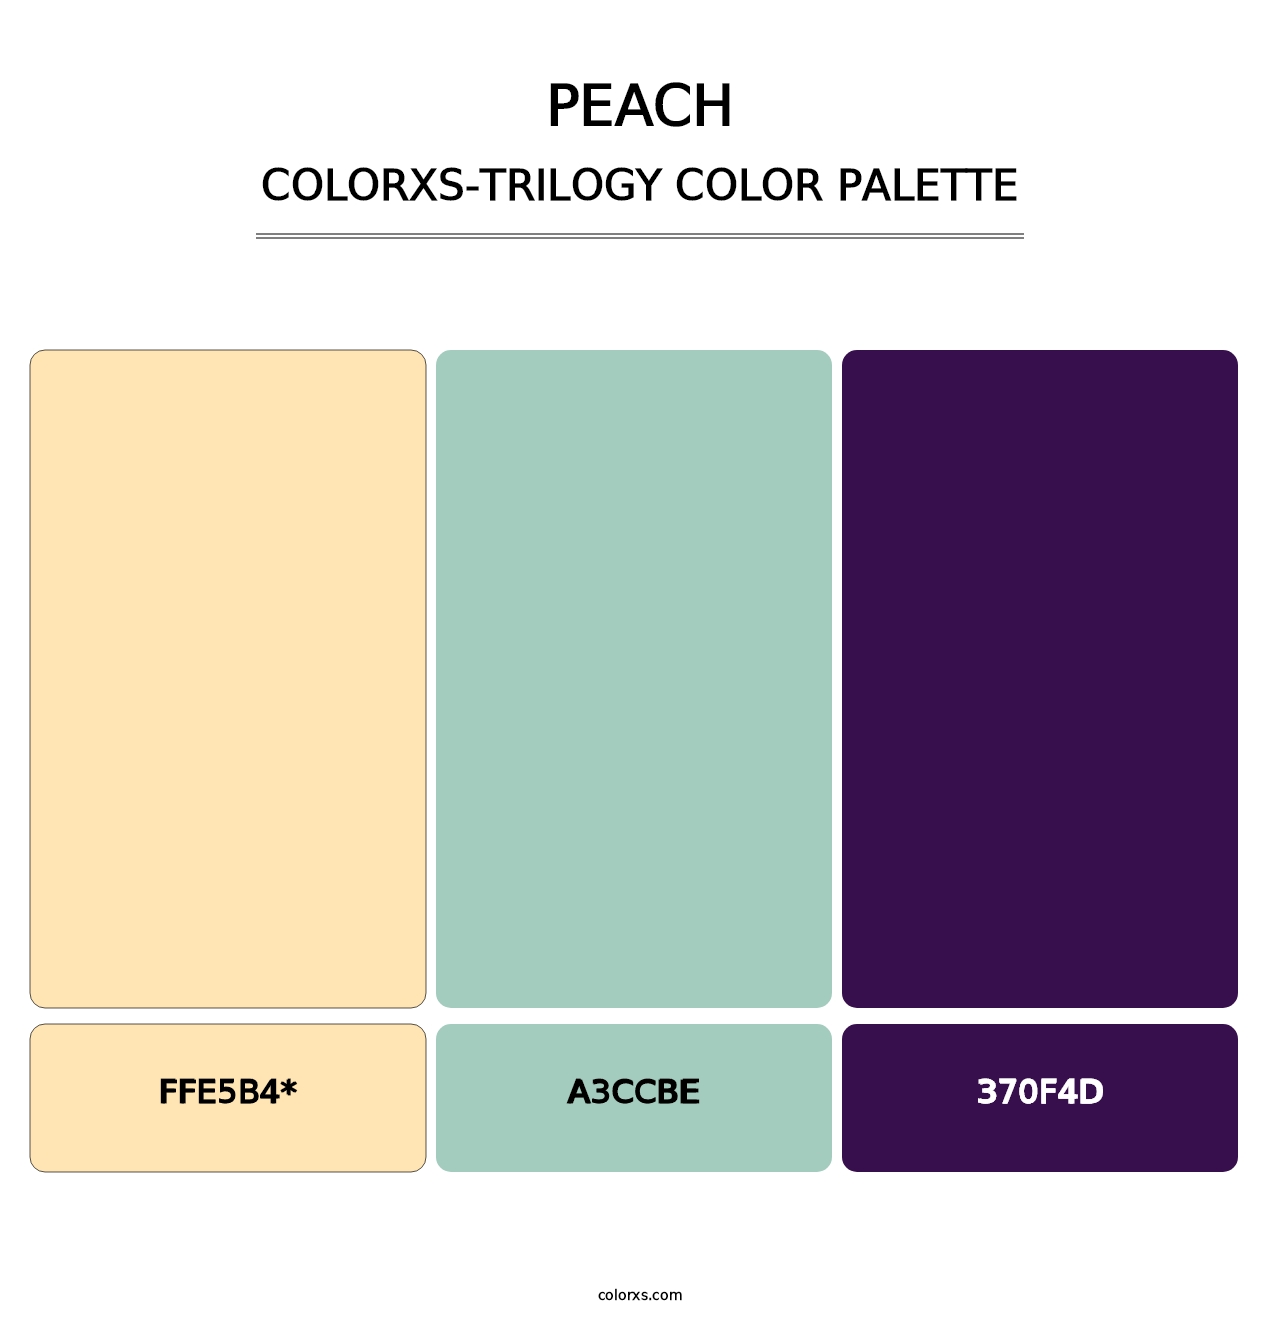 Peach - Colorxs Trilogy Palette